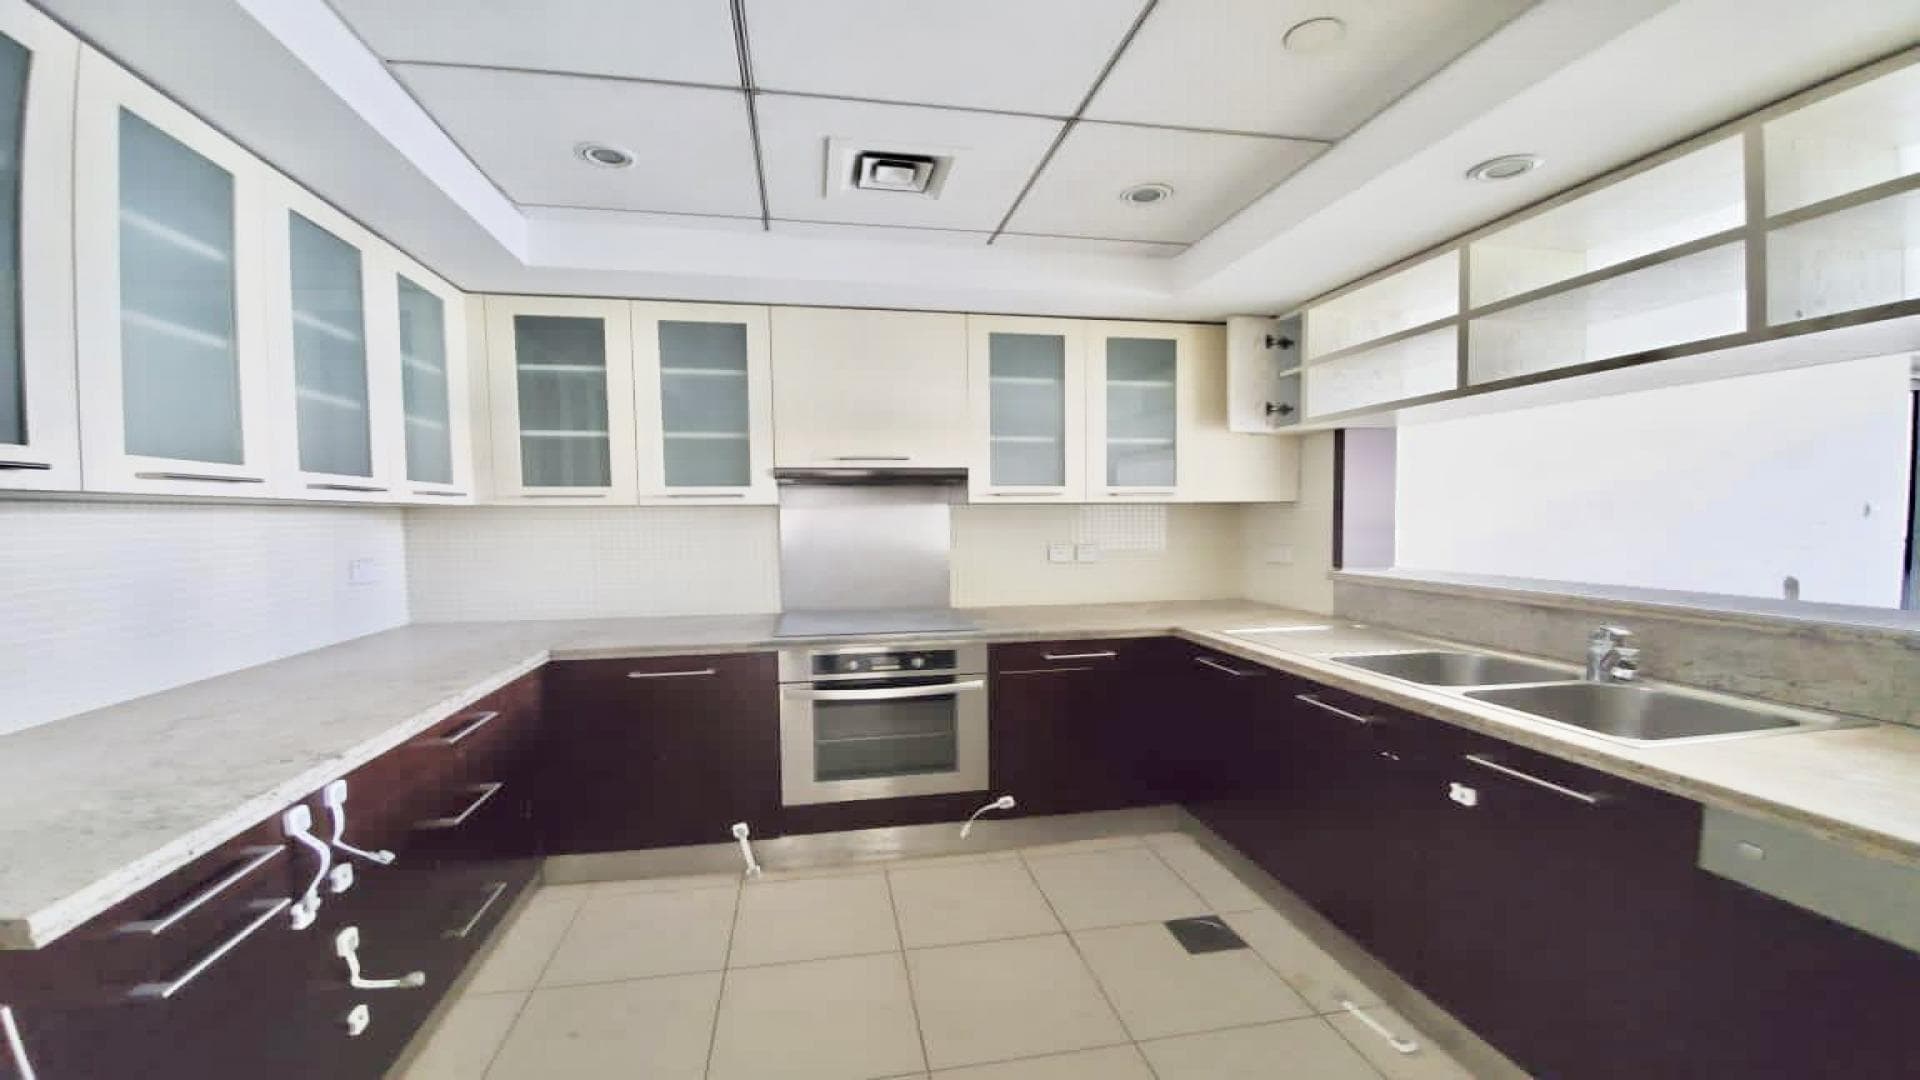 2 Bedroom Apartment For Rent Al Thamam 61 Lp35453 1b6a00cf3dfe0700.jpg